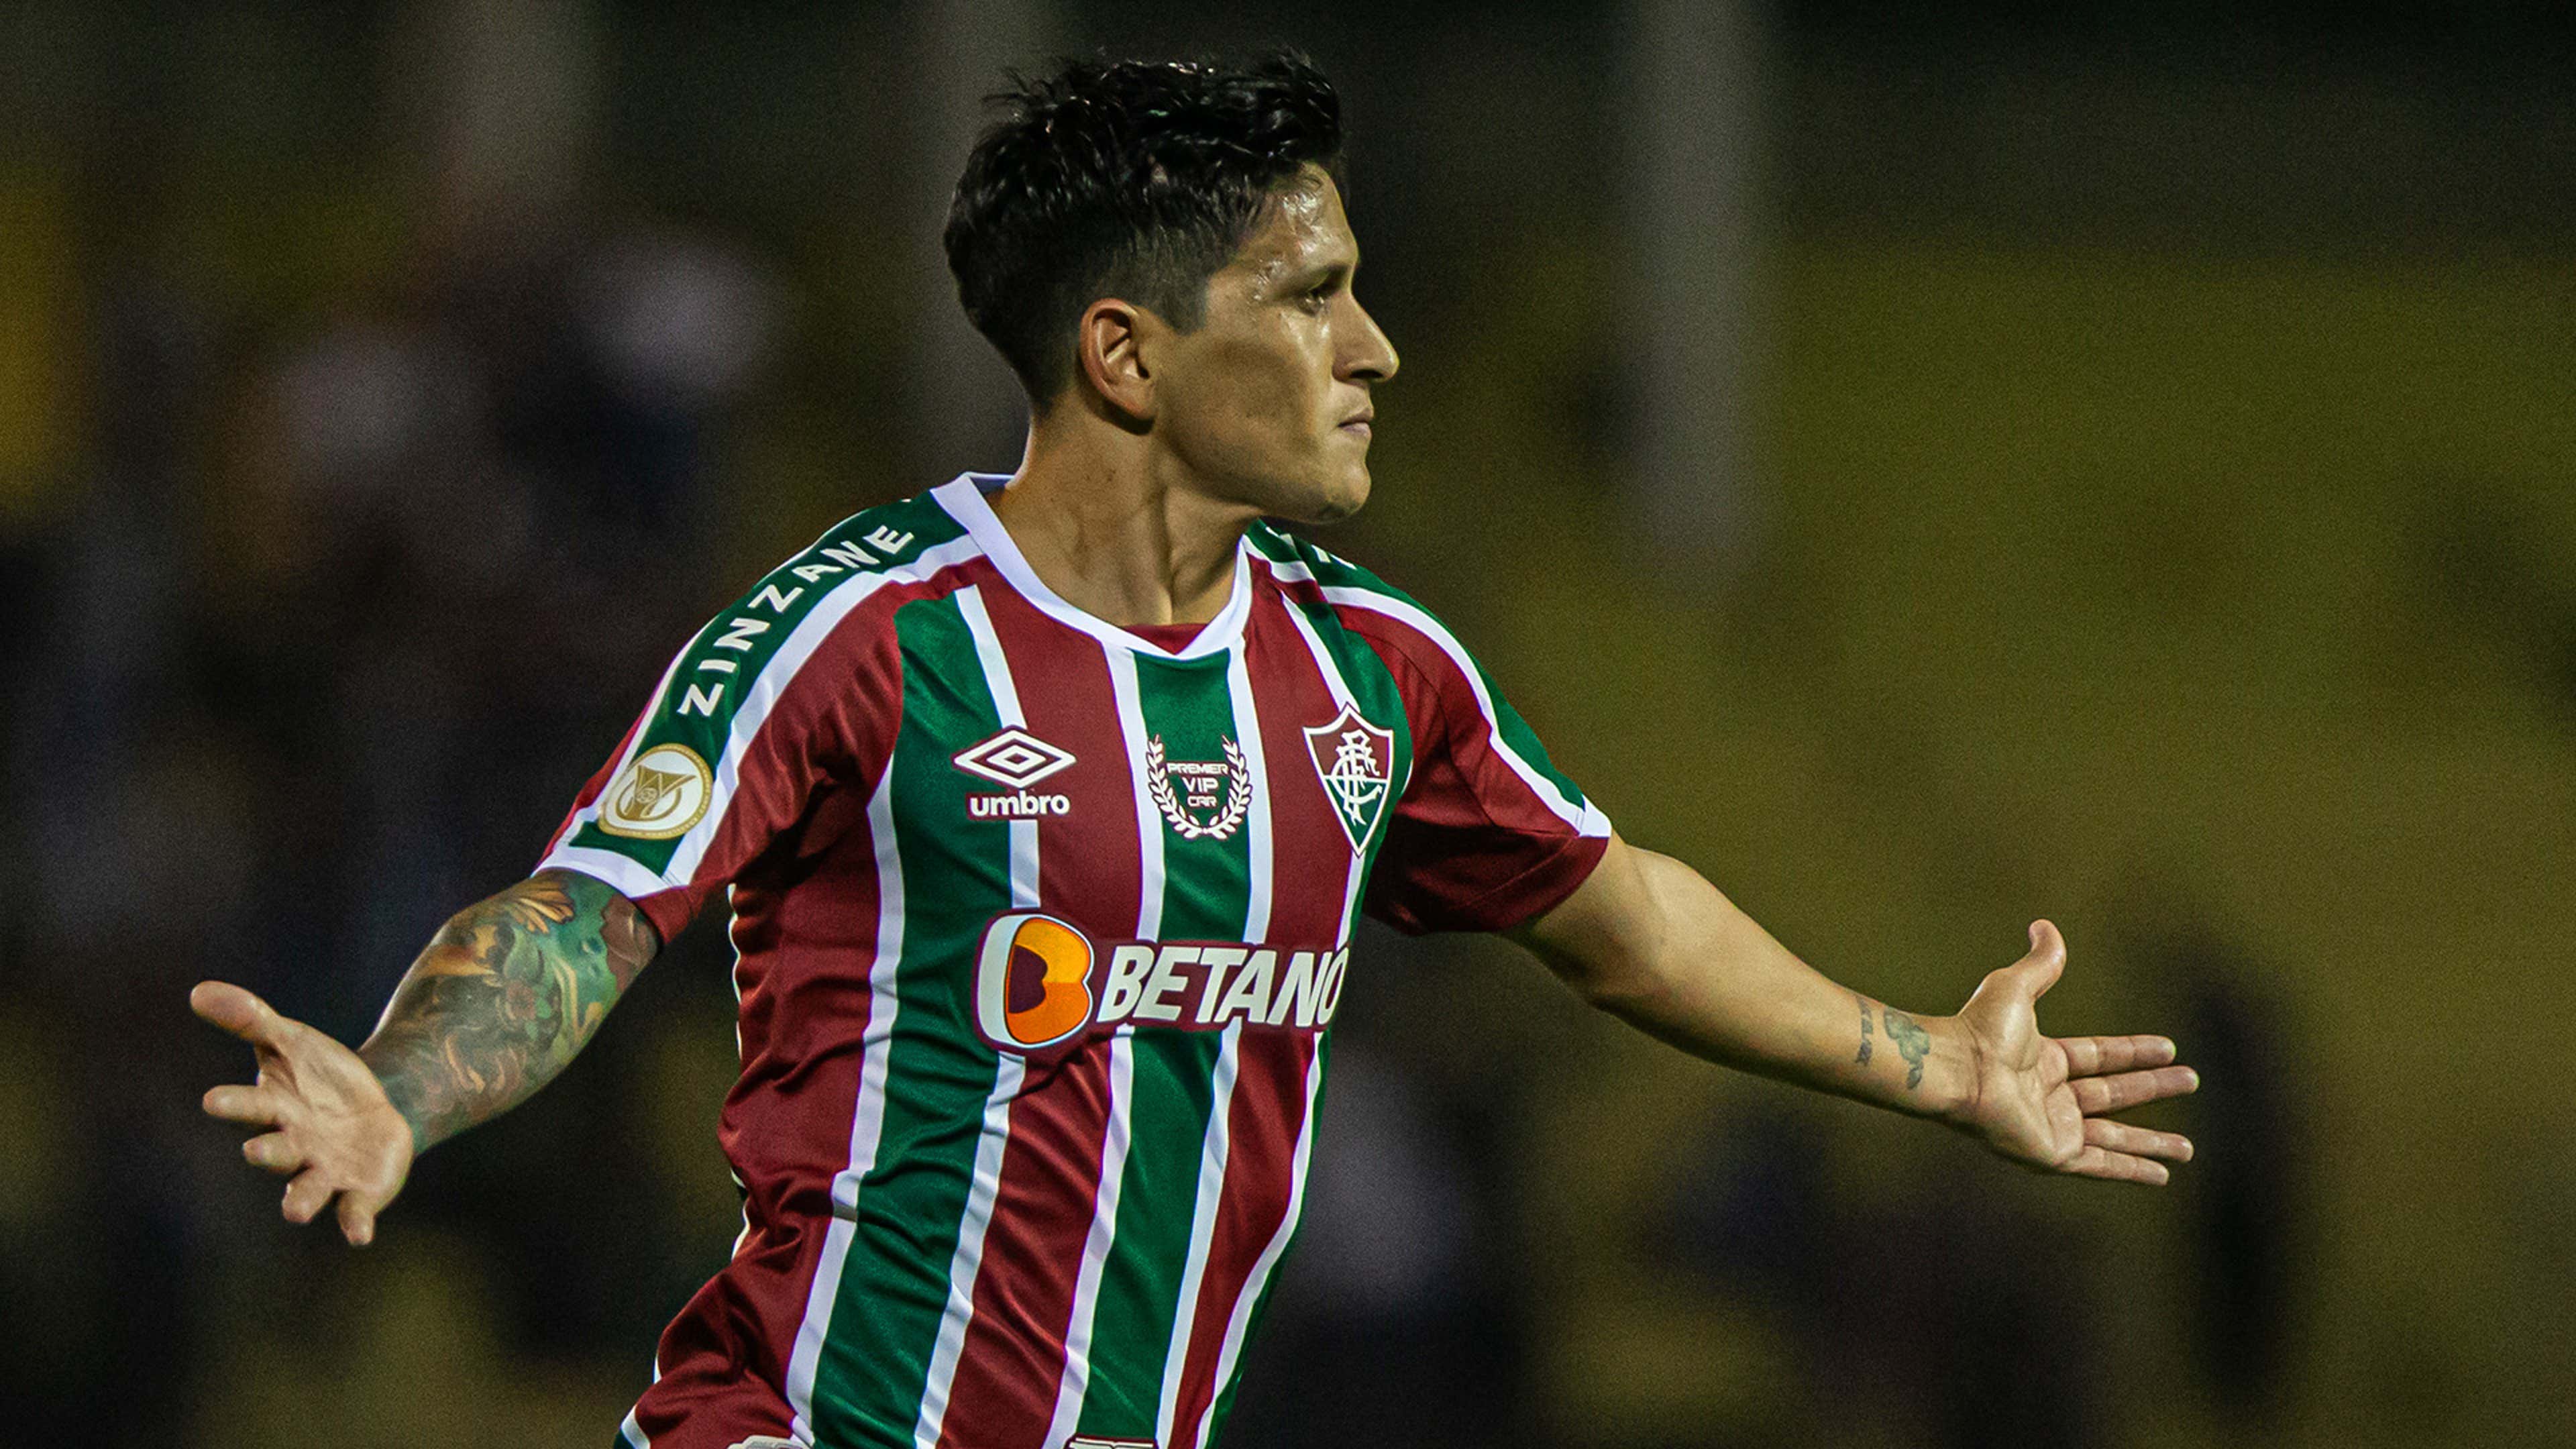 Fluminense é escolhido como SEGUNDO MELHOR time do Brasil em 2023 -  FLUNOMENO